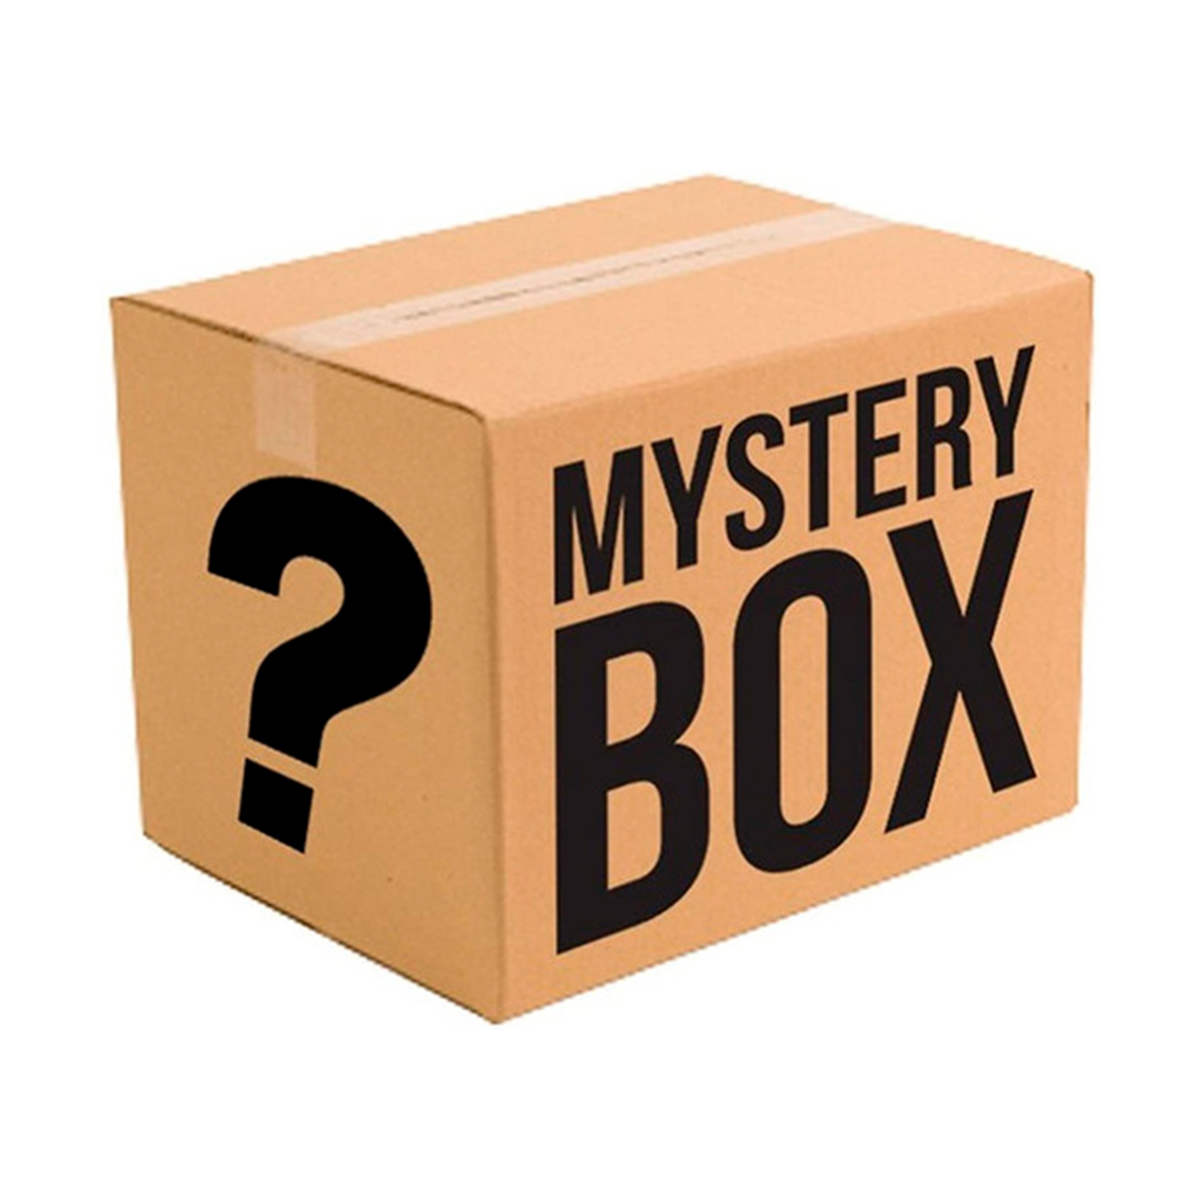 Caja Misteriosa contiene varios productos